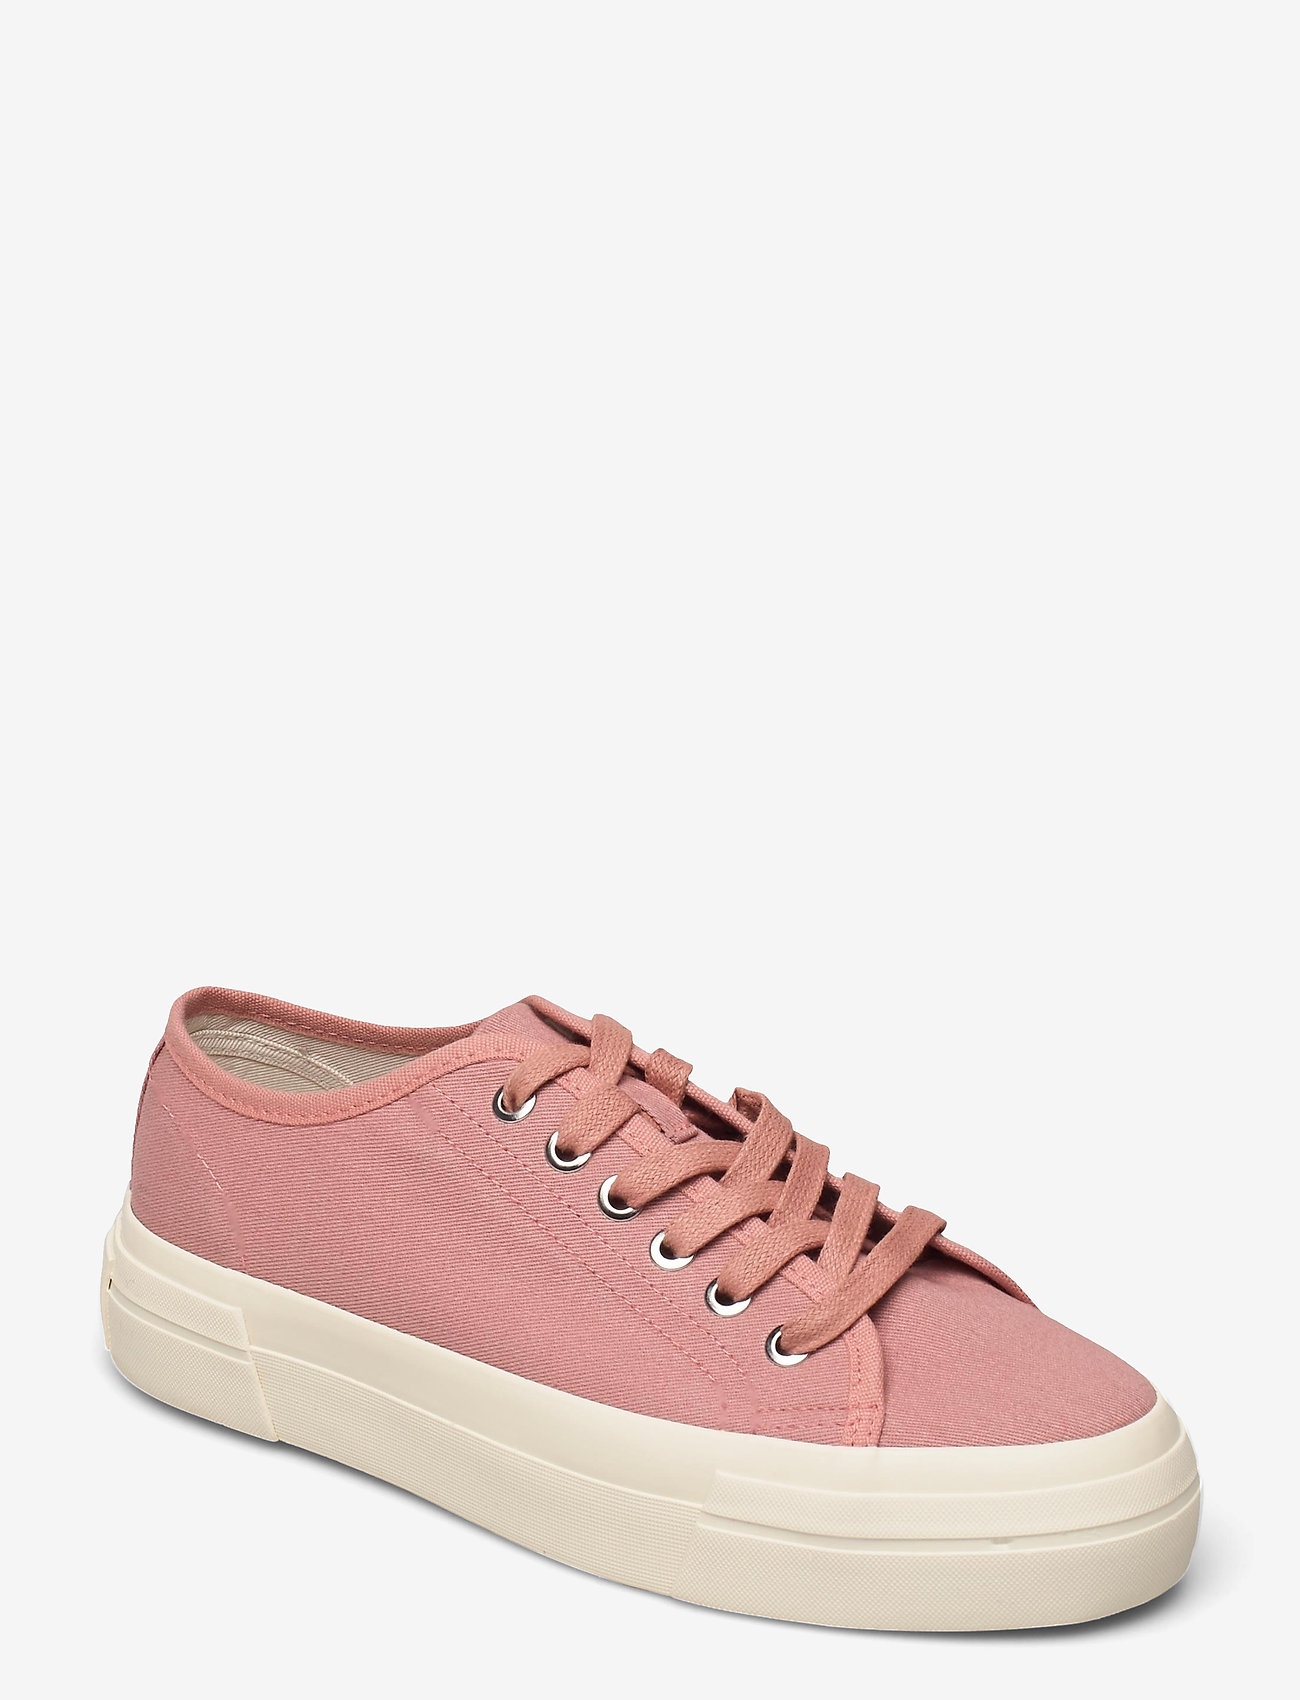 VAGABOND - TEDDIE W - lage sneakers - dusty pink - 0